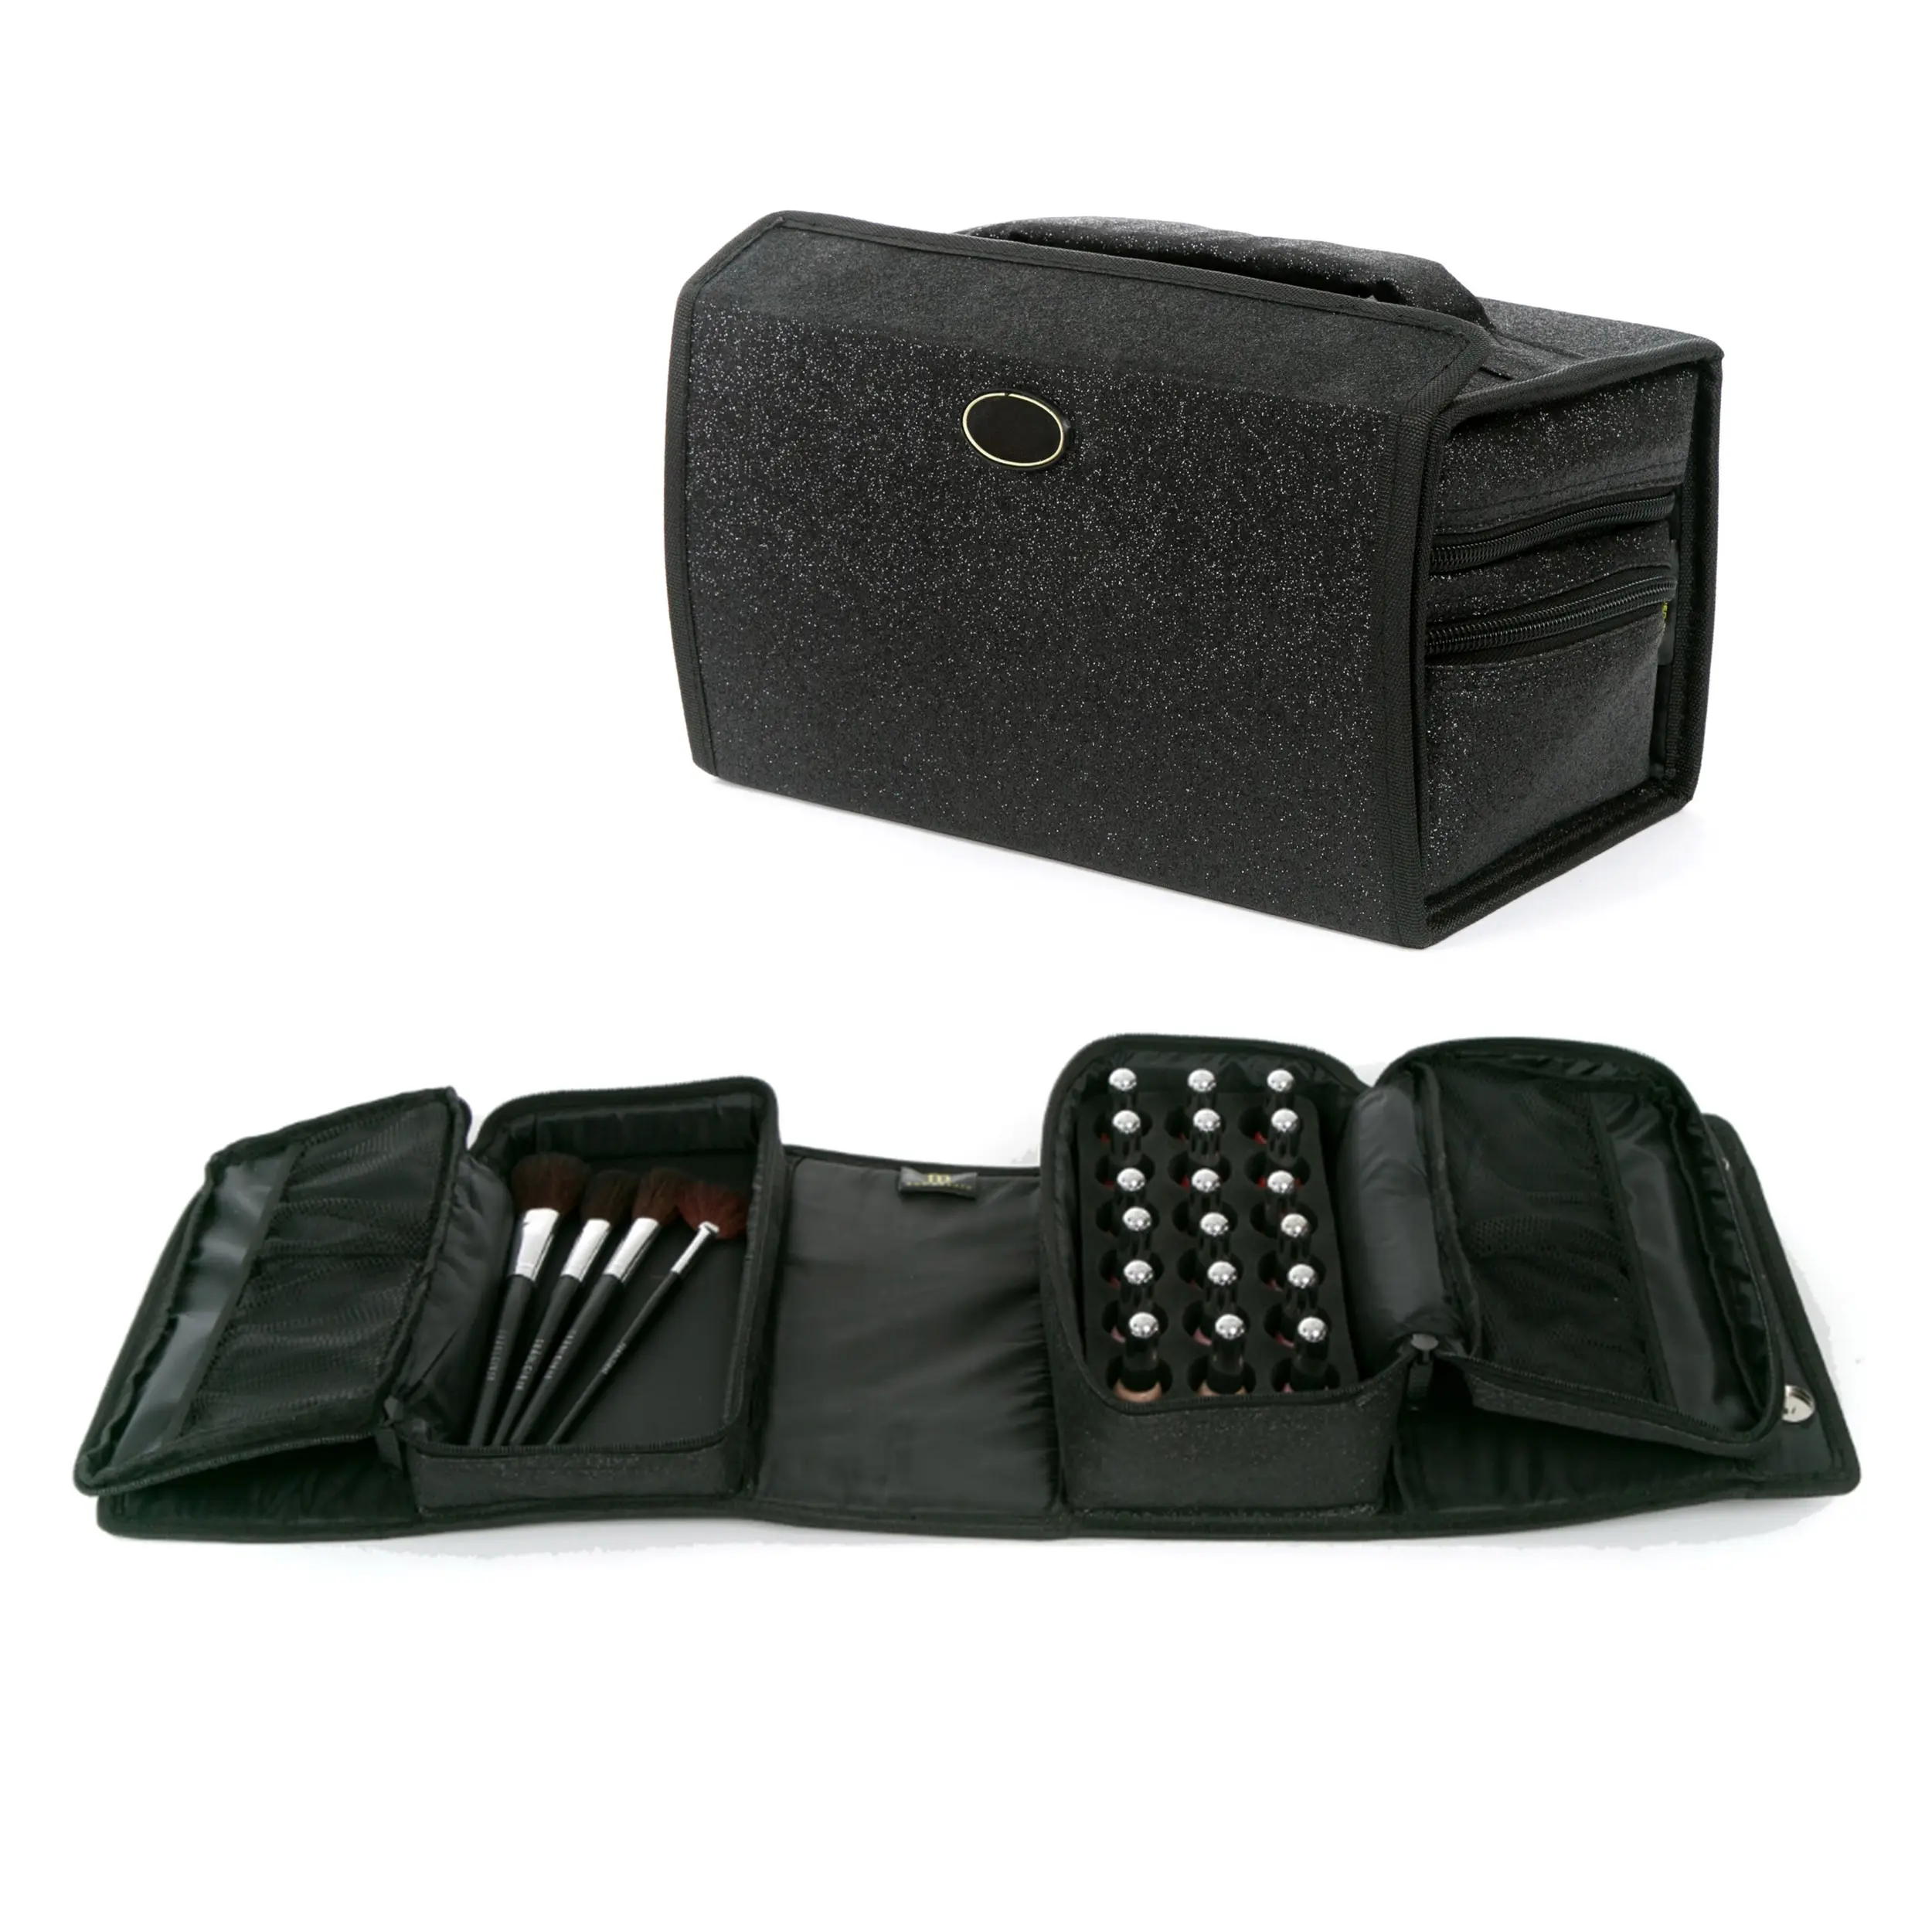 공장 개인 상표 블랙 스파클 필수 도구 매니큐어 컴팩트 매니큐어 케이스 가방